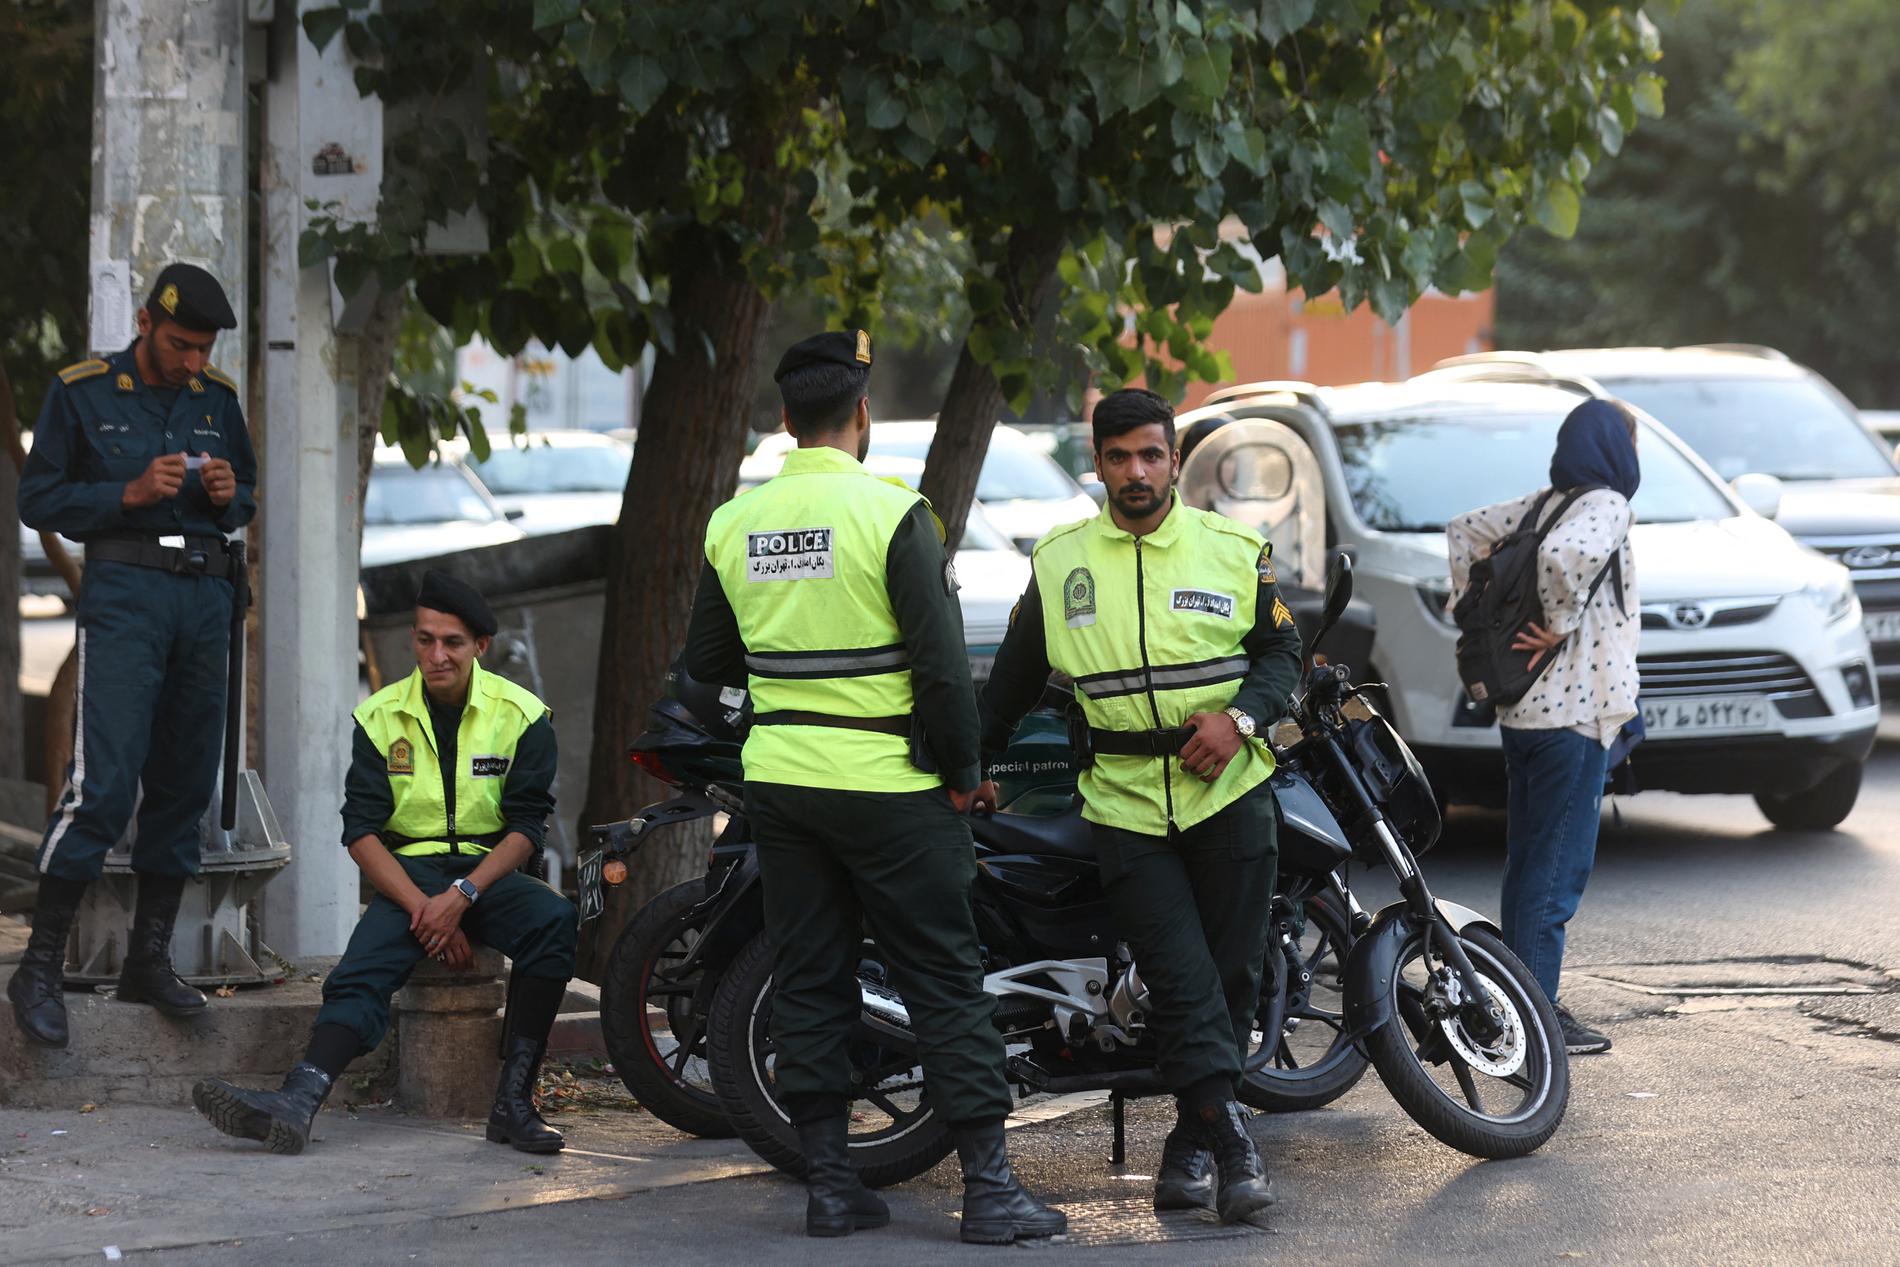 Polis på gatorna i Iran när sedlighetspolisen kommer tillbaka. 